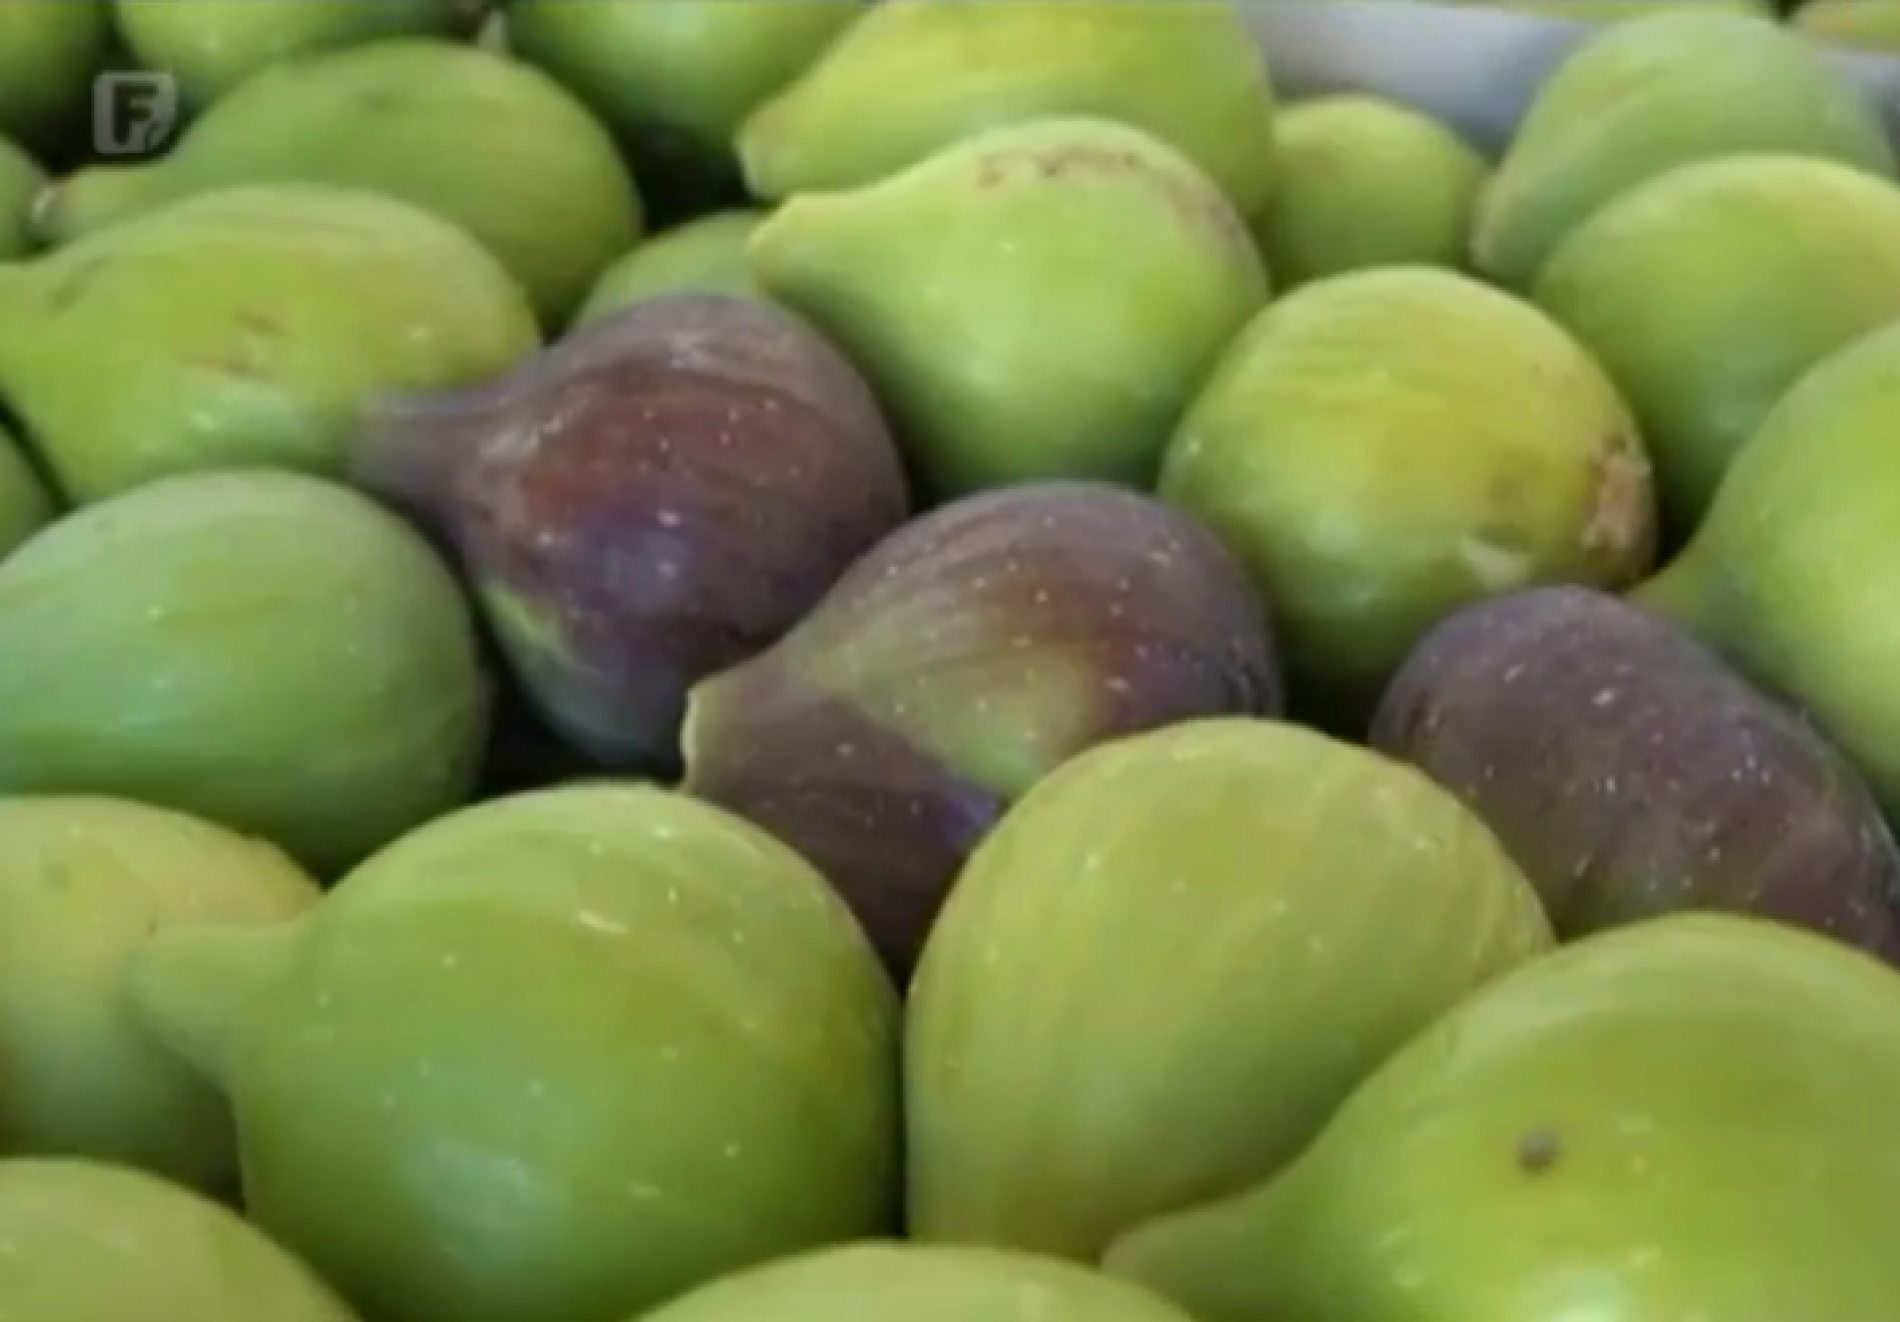 Berba smokvi u punom jeku, plodovi nikada kvalitetniji (Video)